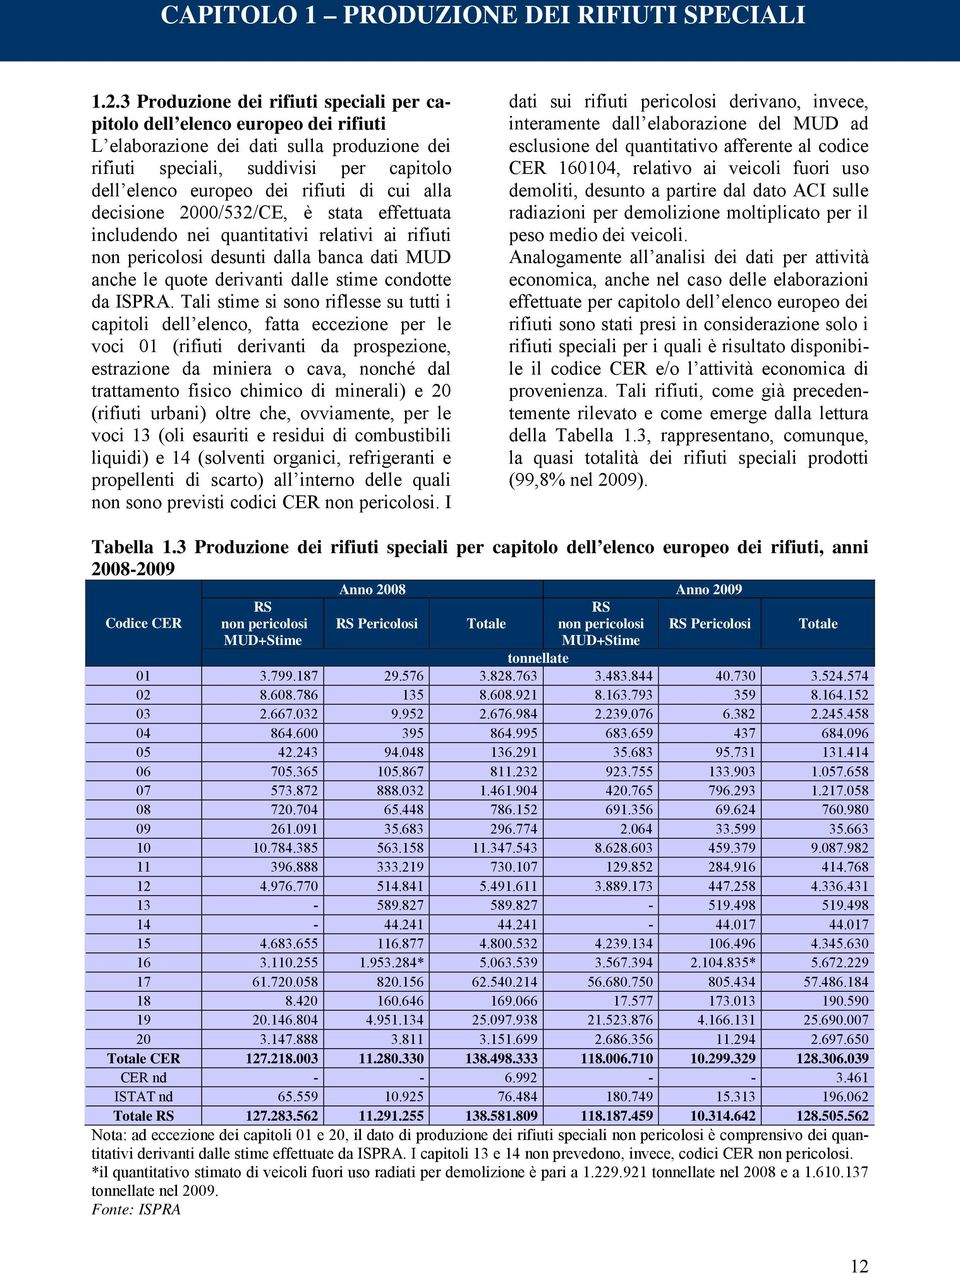 cui alla decisione 2000/532/CE, è stata effettuata includendo nei quantitativi relativi ai rifiuti non pericolosi desunti dalla banca dati MUD anche le quote derivanti dalle stime condotte da ISPRA.